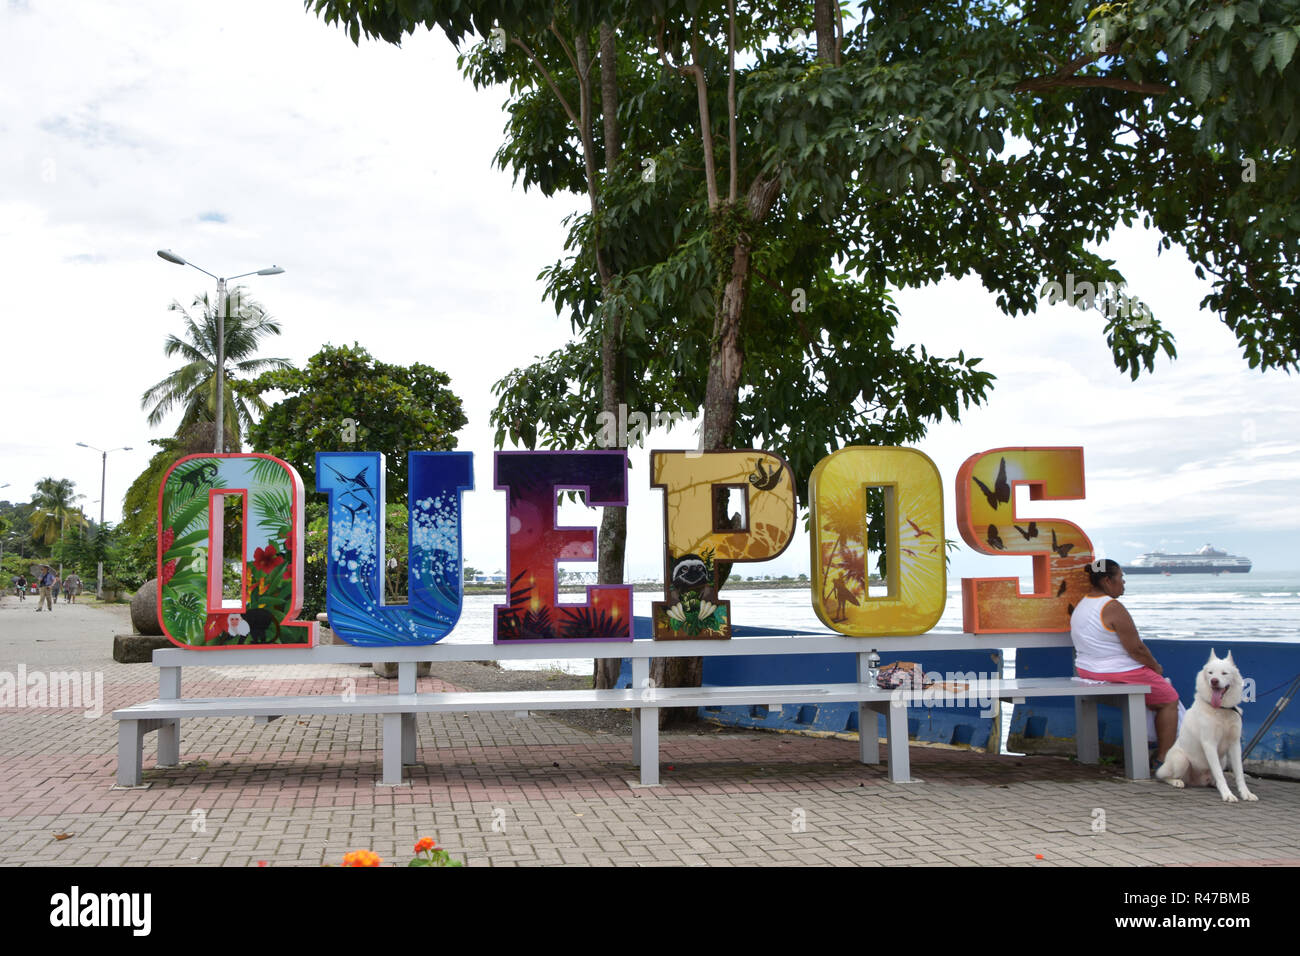 Signo de la ciudad de Quepos, Costa Rica a lo largo de la playa. Crucero en el fondo Foto de stock